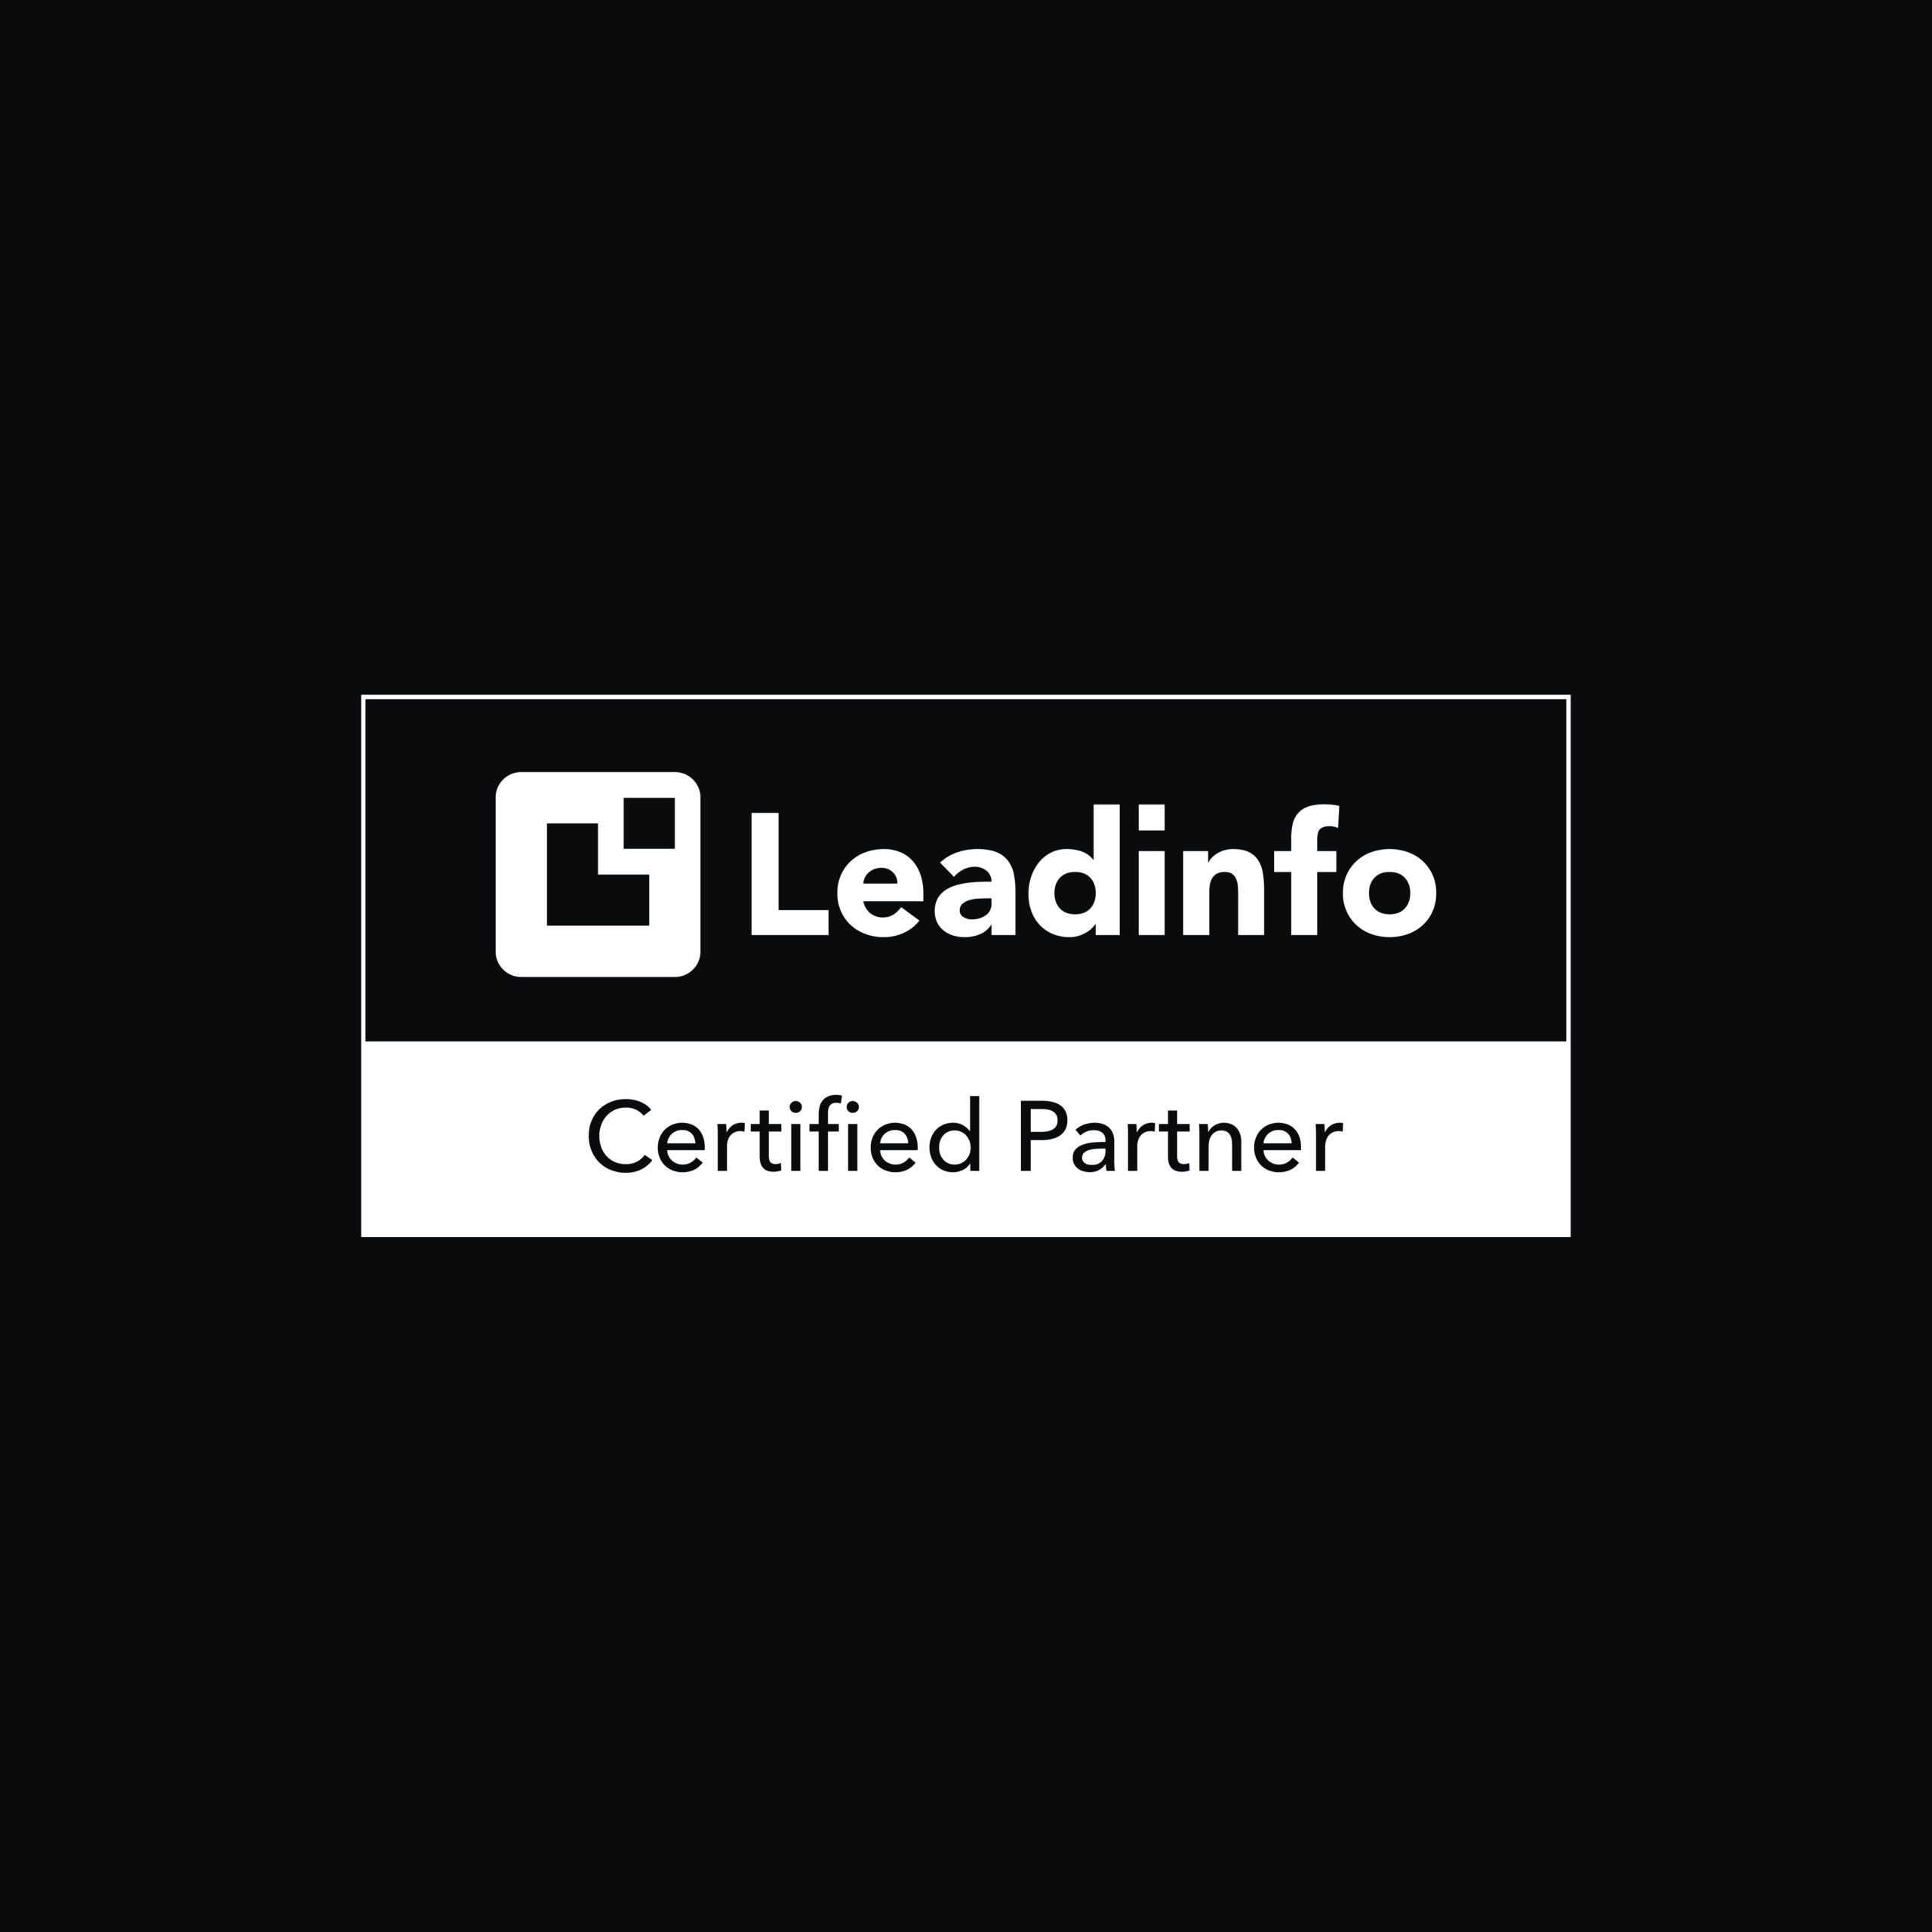 Leadinfo certified partner | Reech